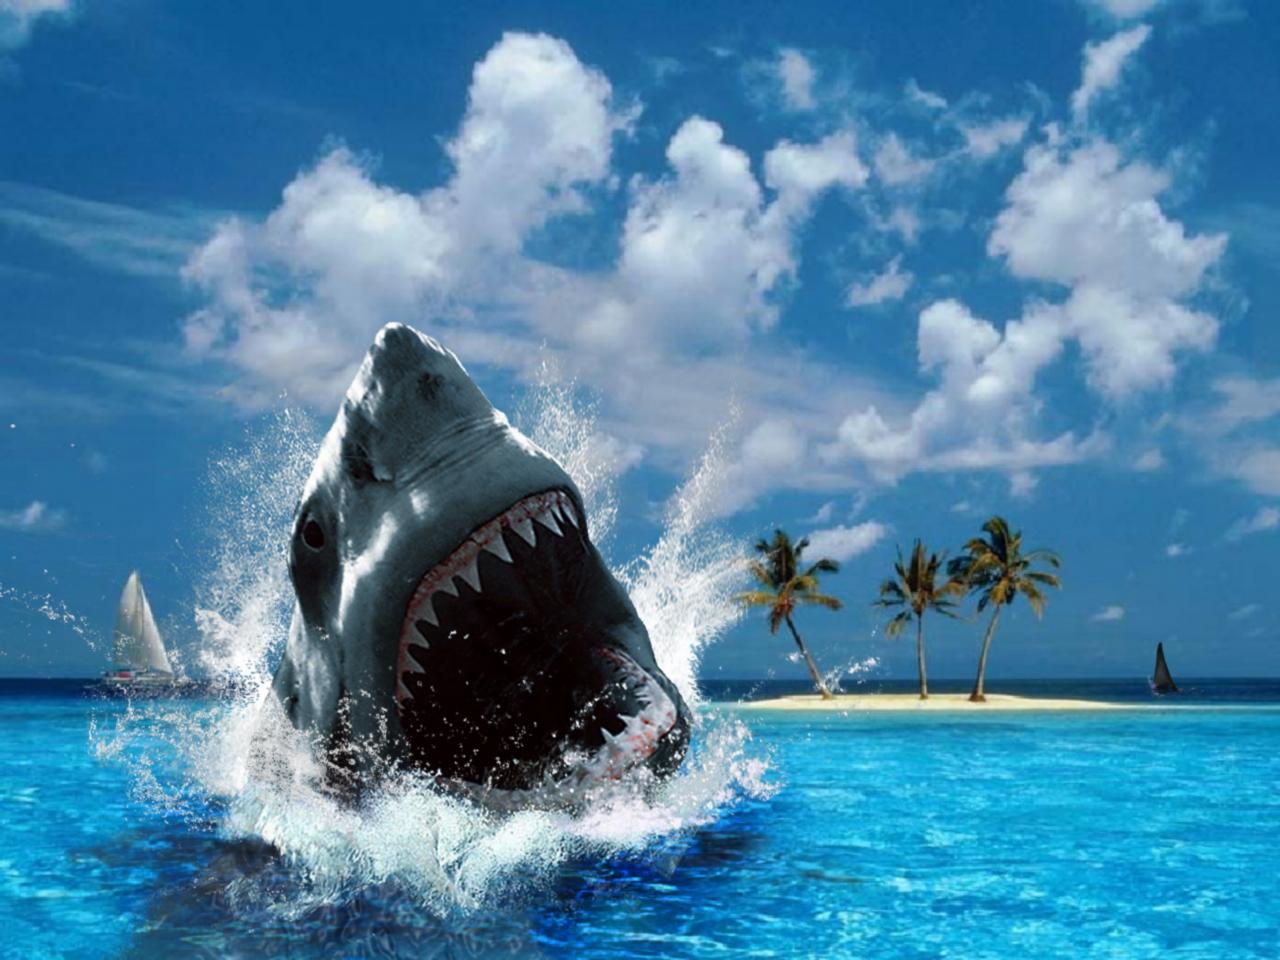 челюсть акулы, акула выпрыгивает из воды, фото, скачать бесплатно